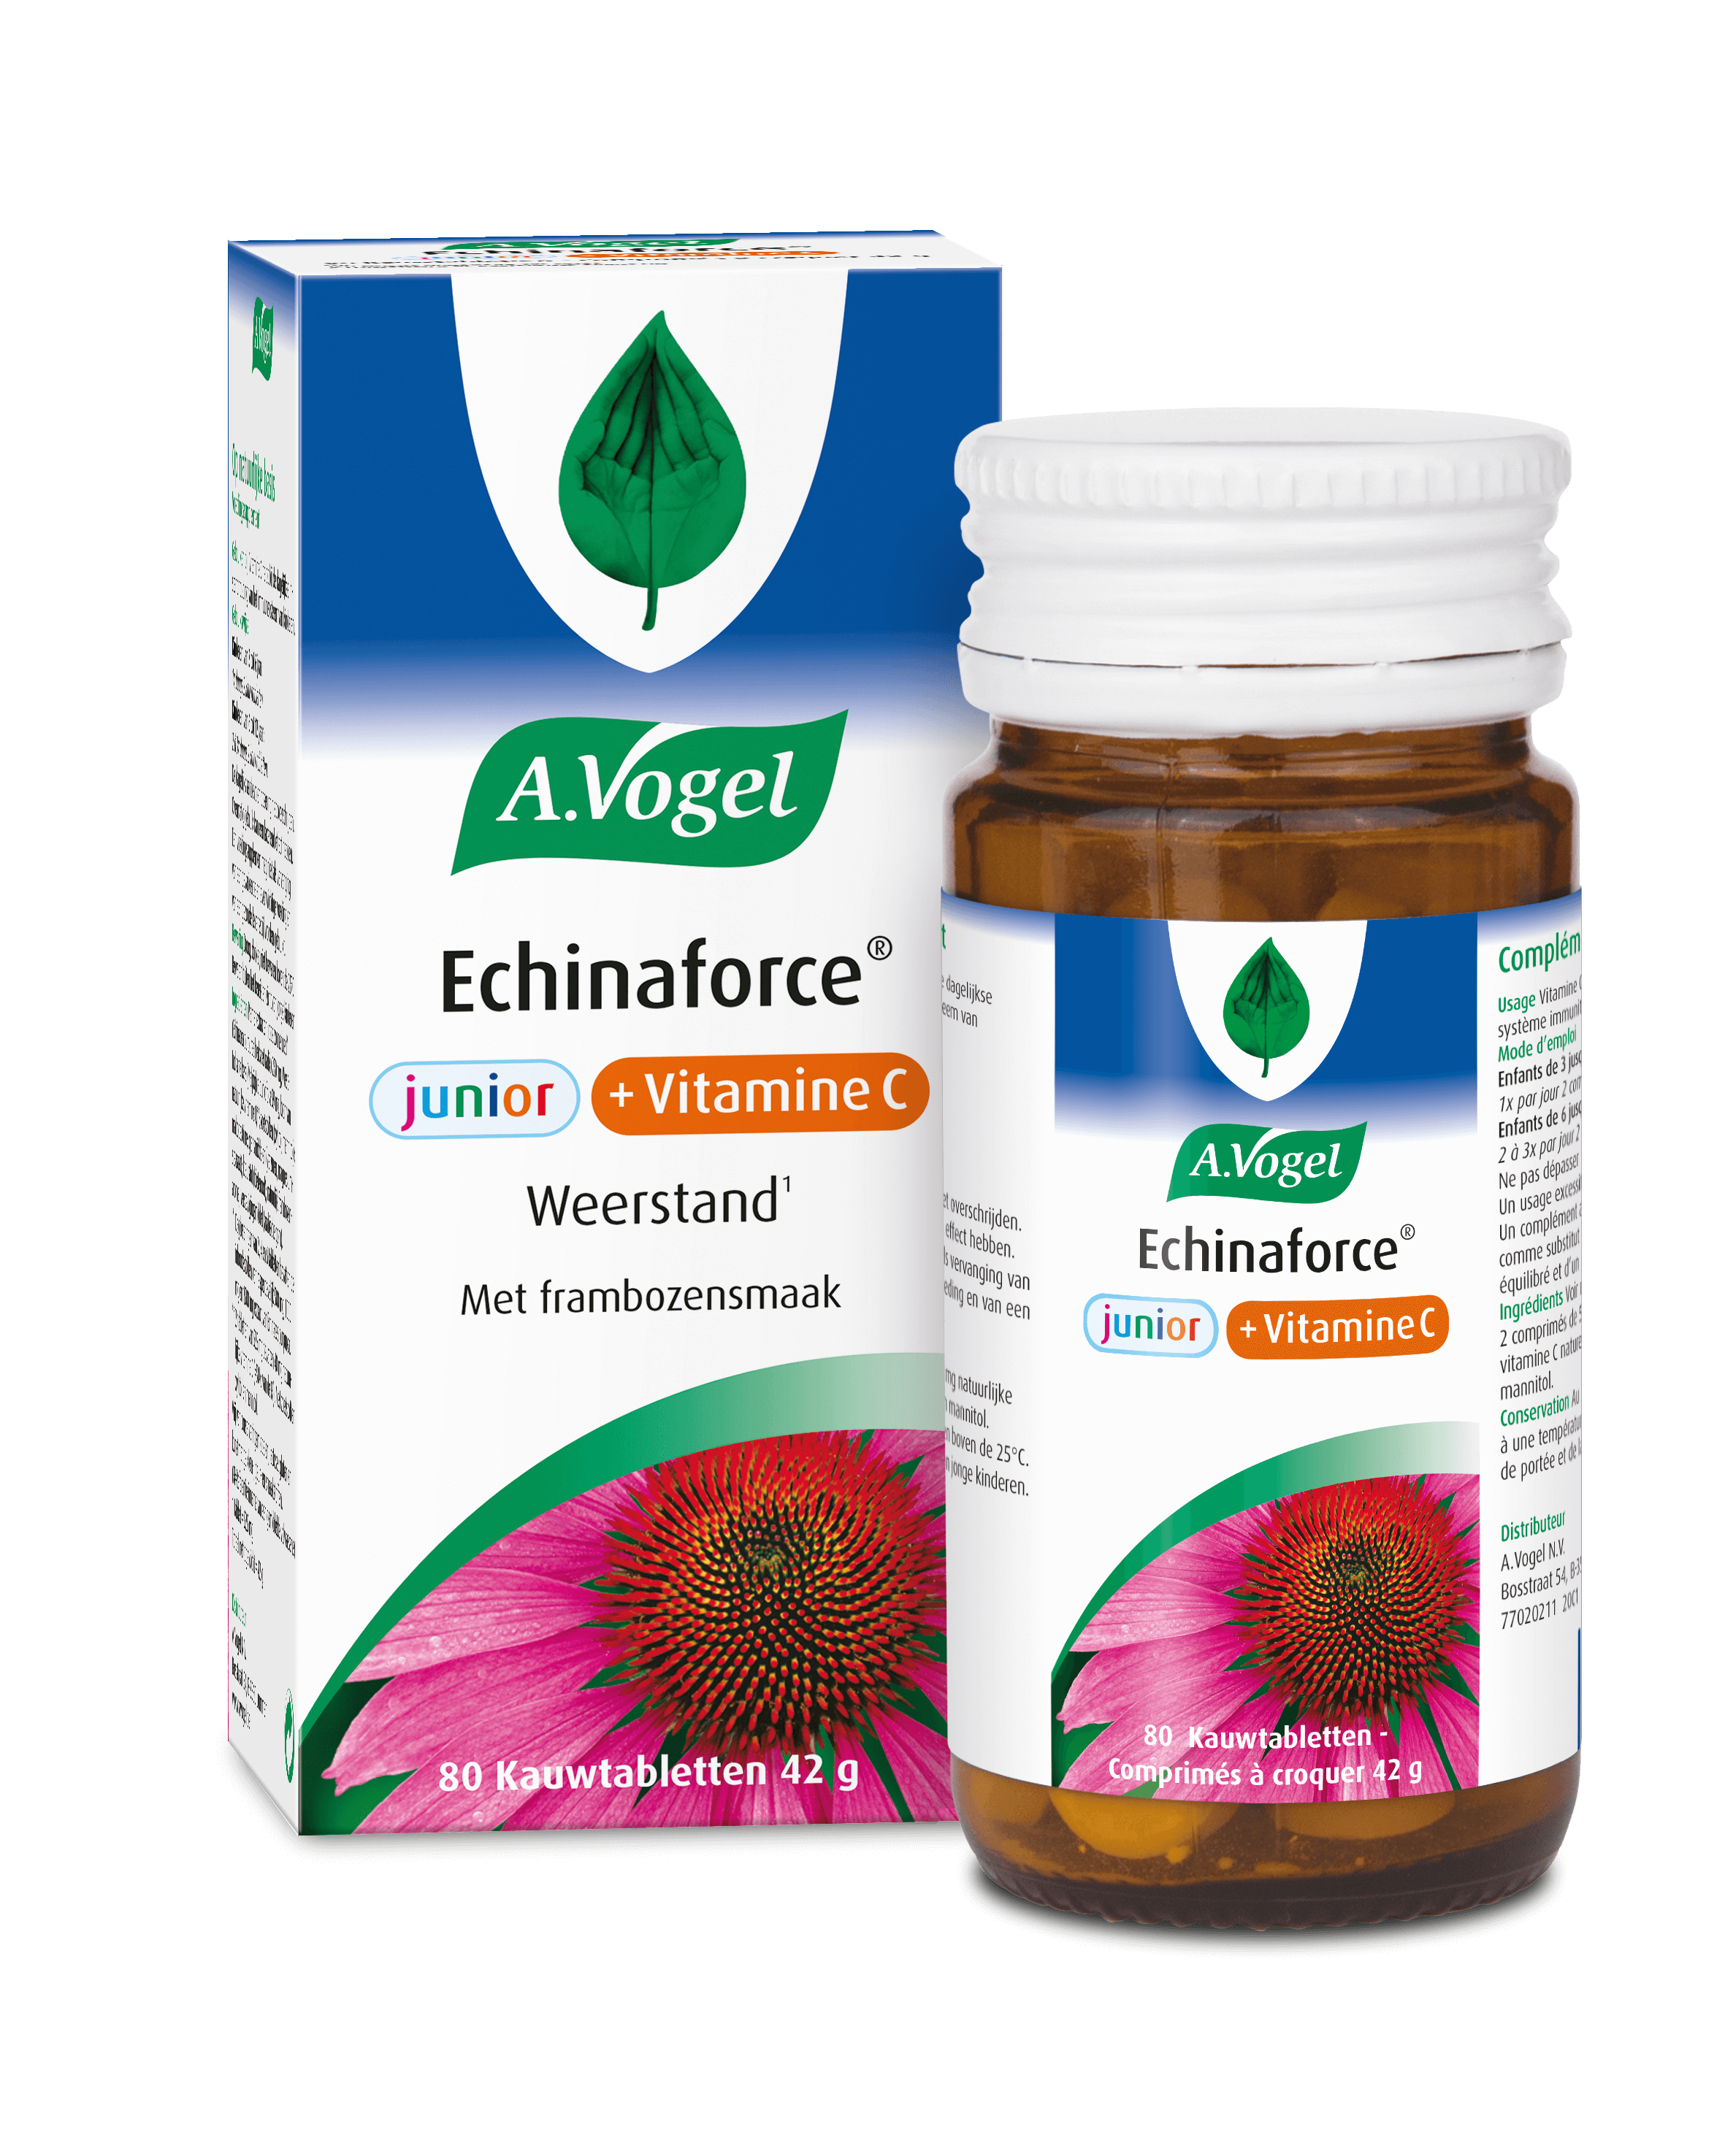 Echinaforce Junior + Vitamine C Weerstand van kinderen te ondersteunen | A.Vogel producten